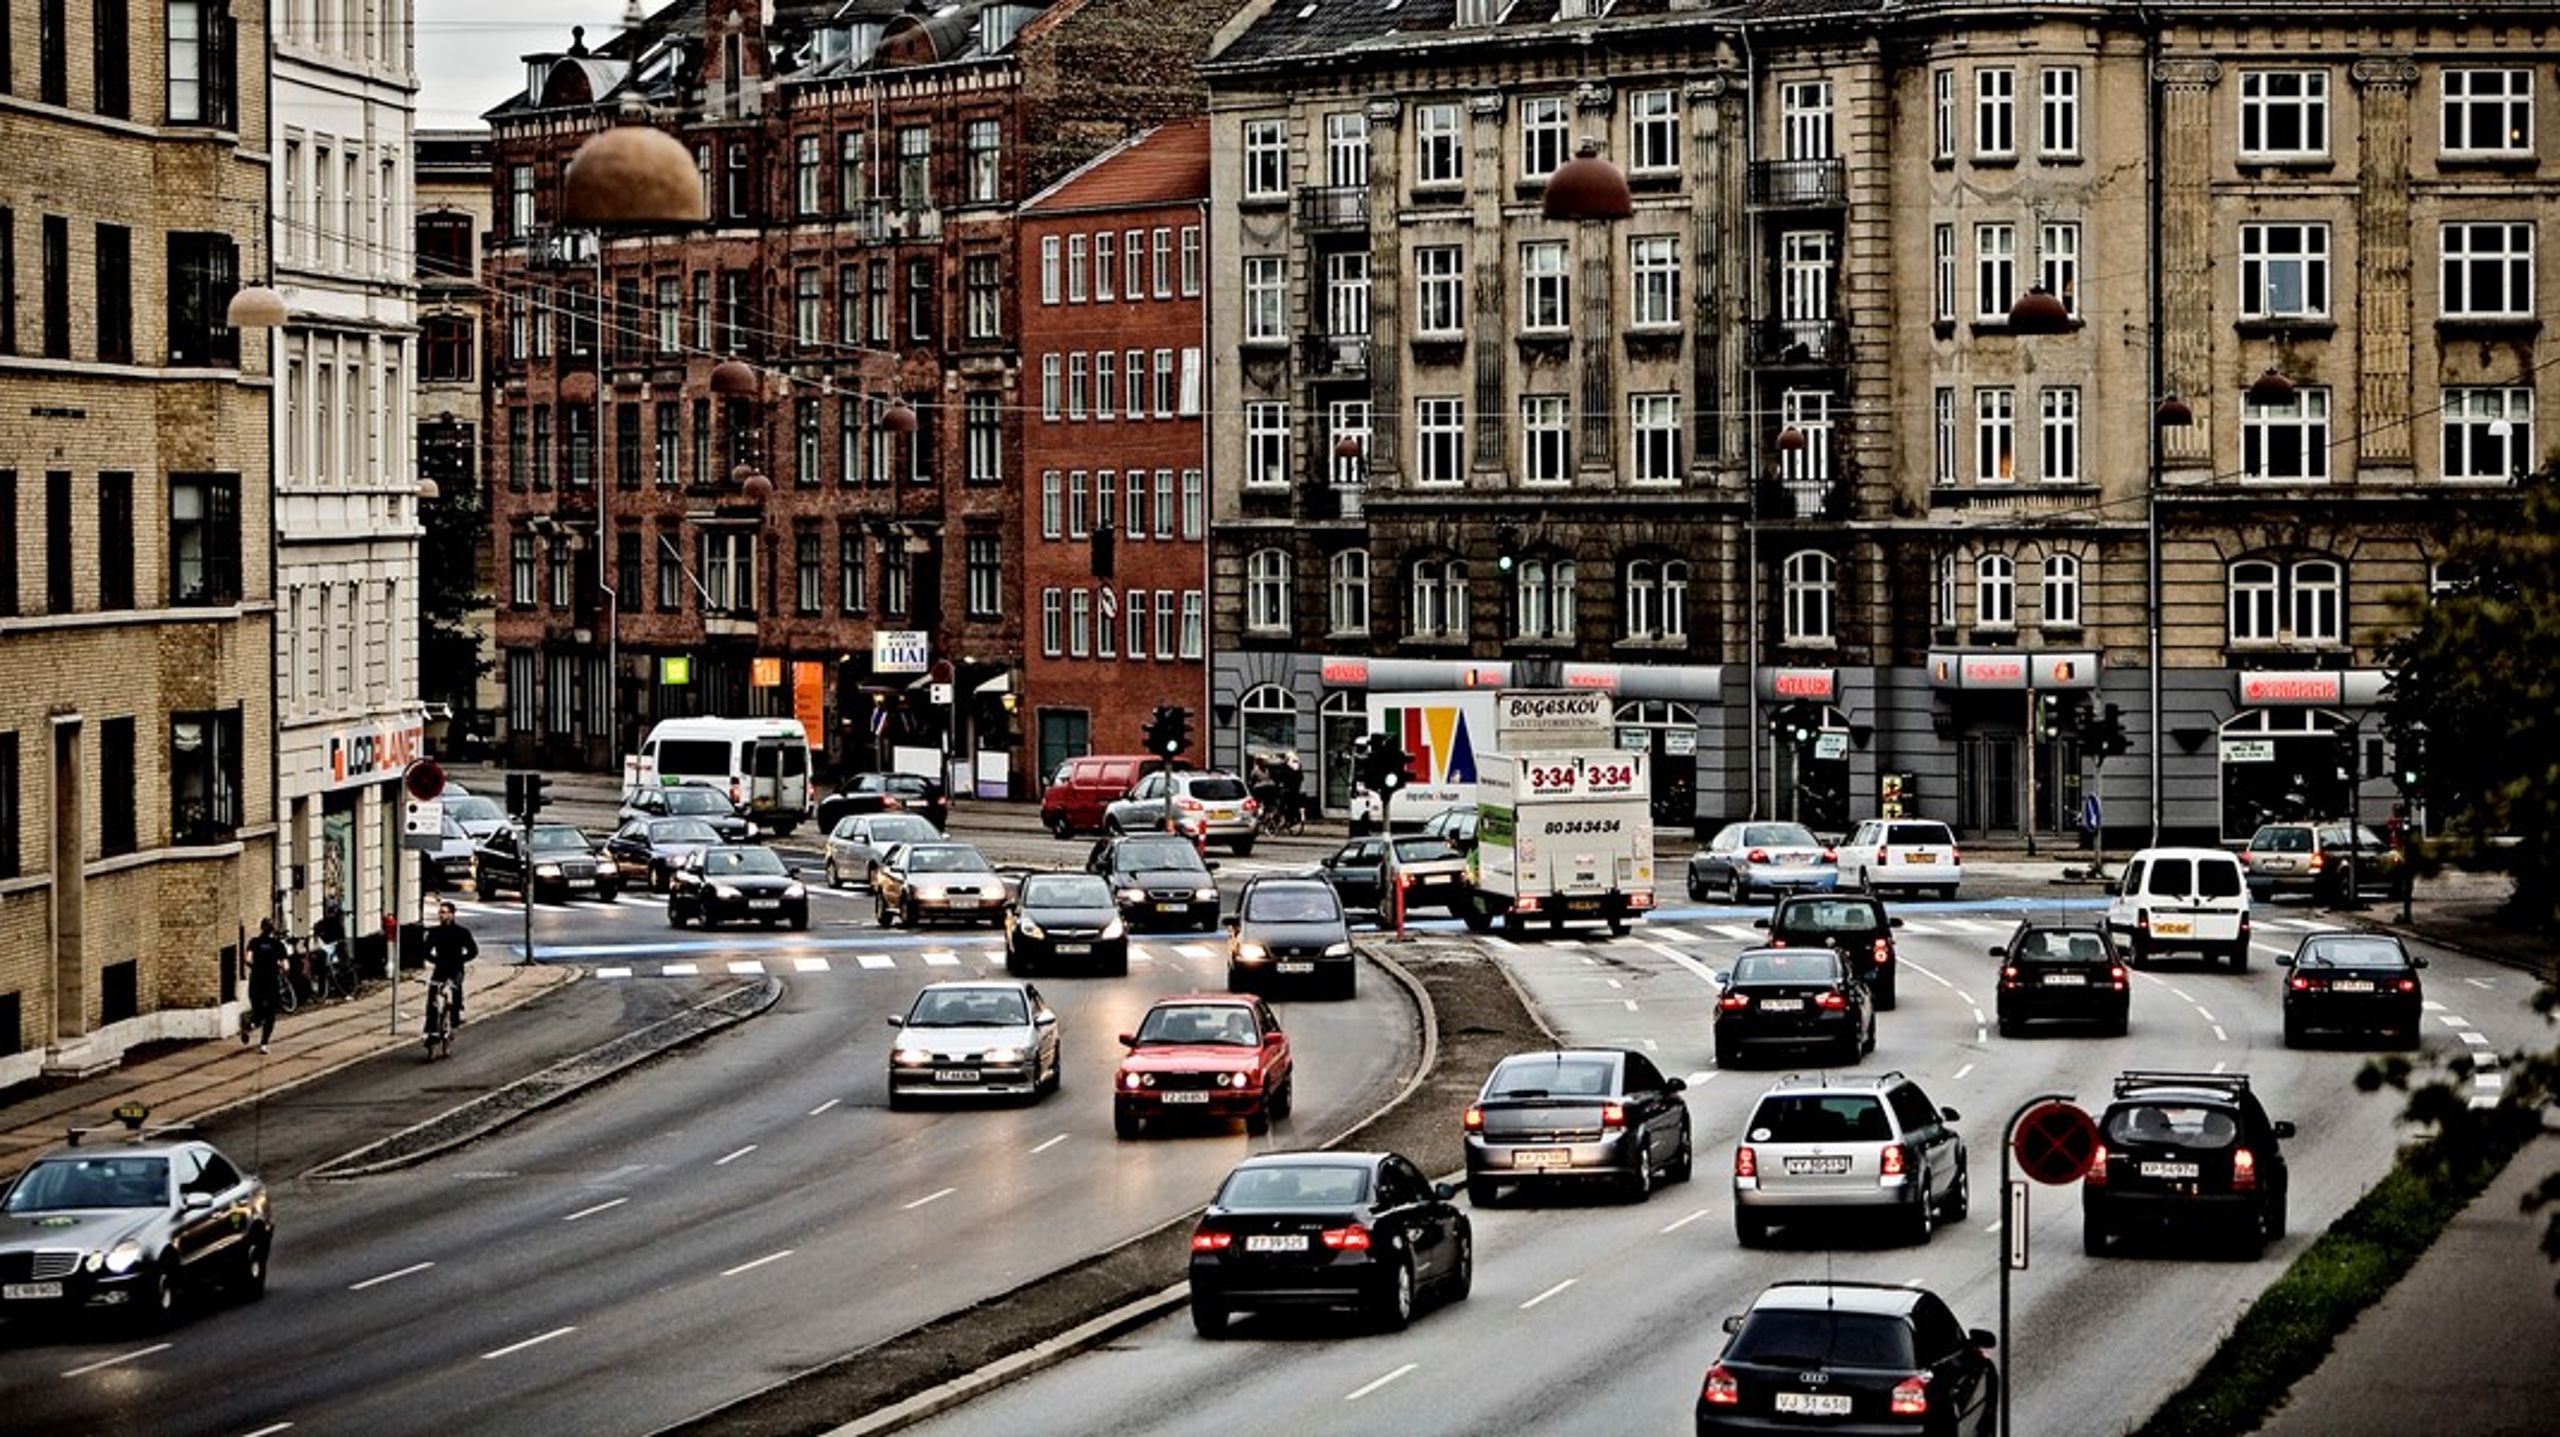 Alene i København benytter 17 procent
af alle københavnere med kørekort sig af Share Now. Alligevel er der ikke tilstrækkeligt fokus på at
fremme brugen af el-delebiler blandt beslutningstagerne. Ligeledes eksisterer
der en række barrierer, som nemt kunne fjernes, skriver Share Now.